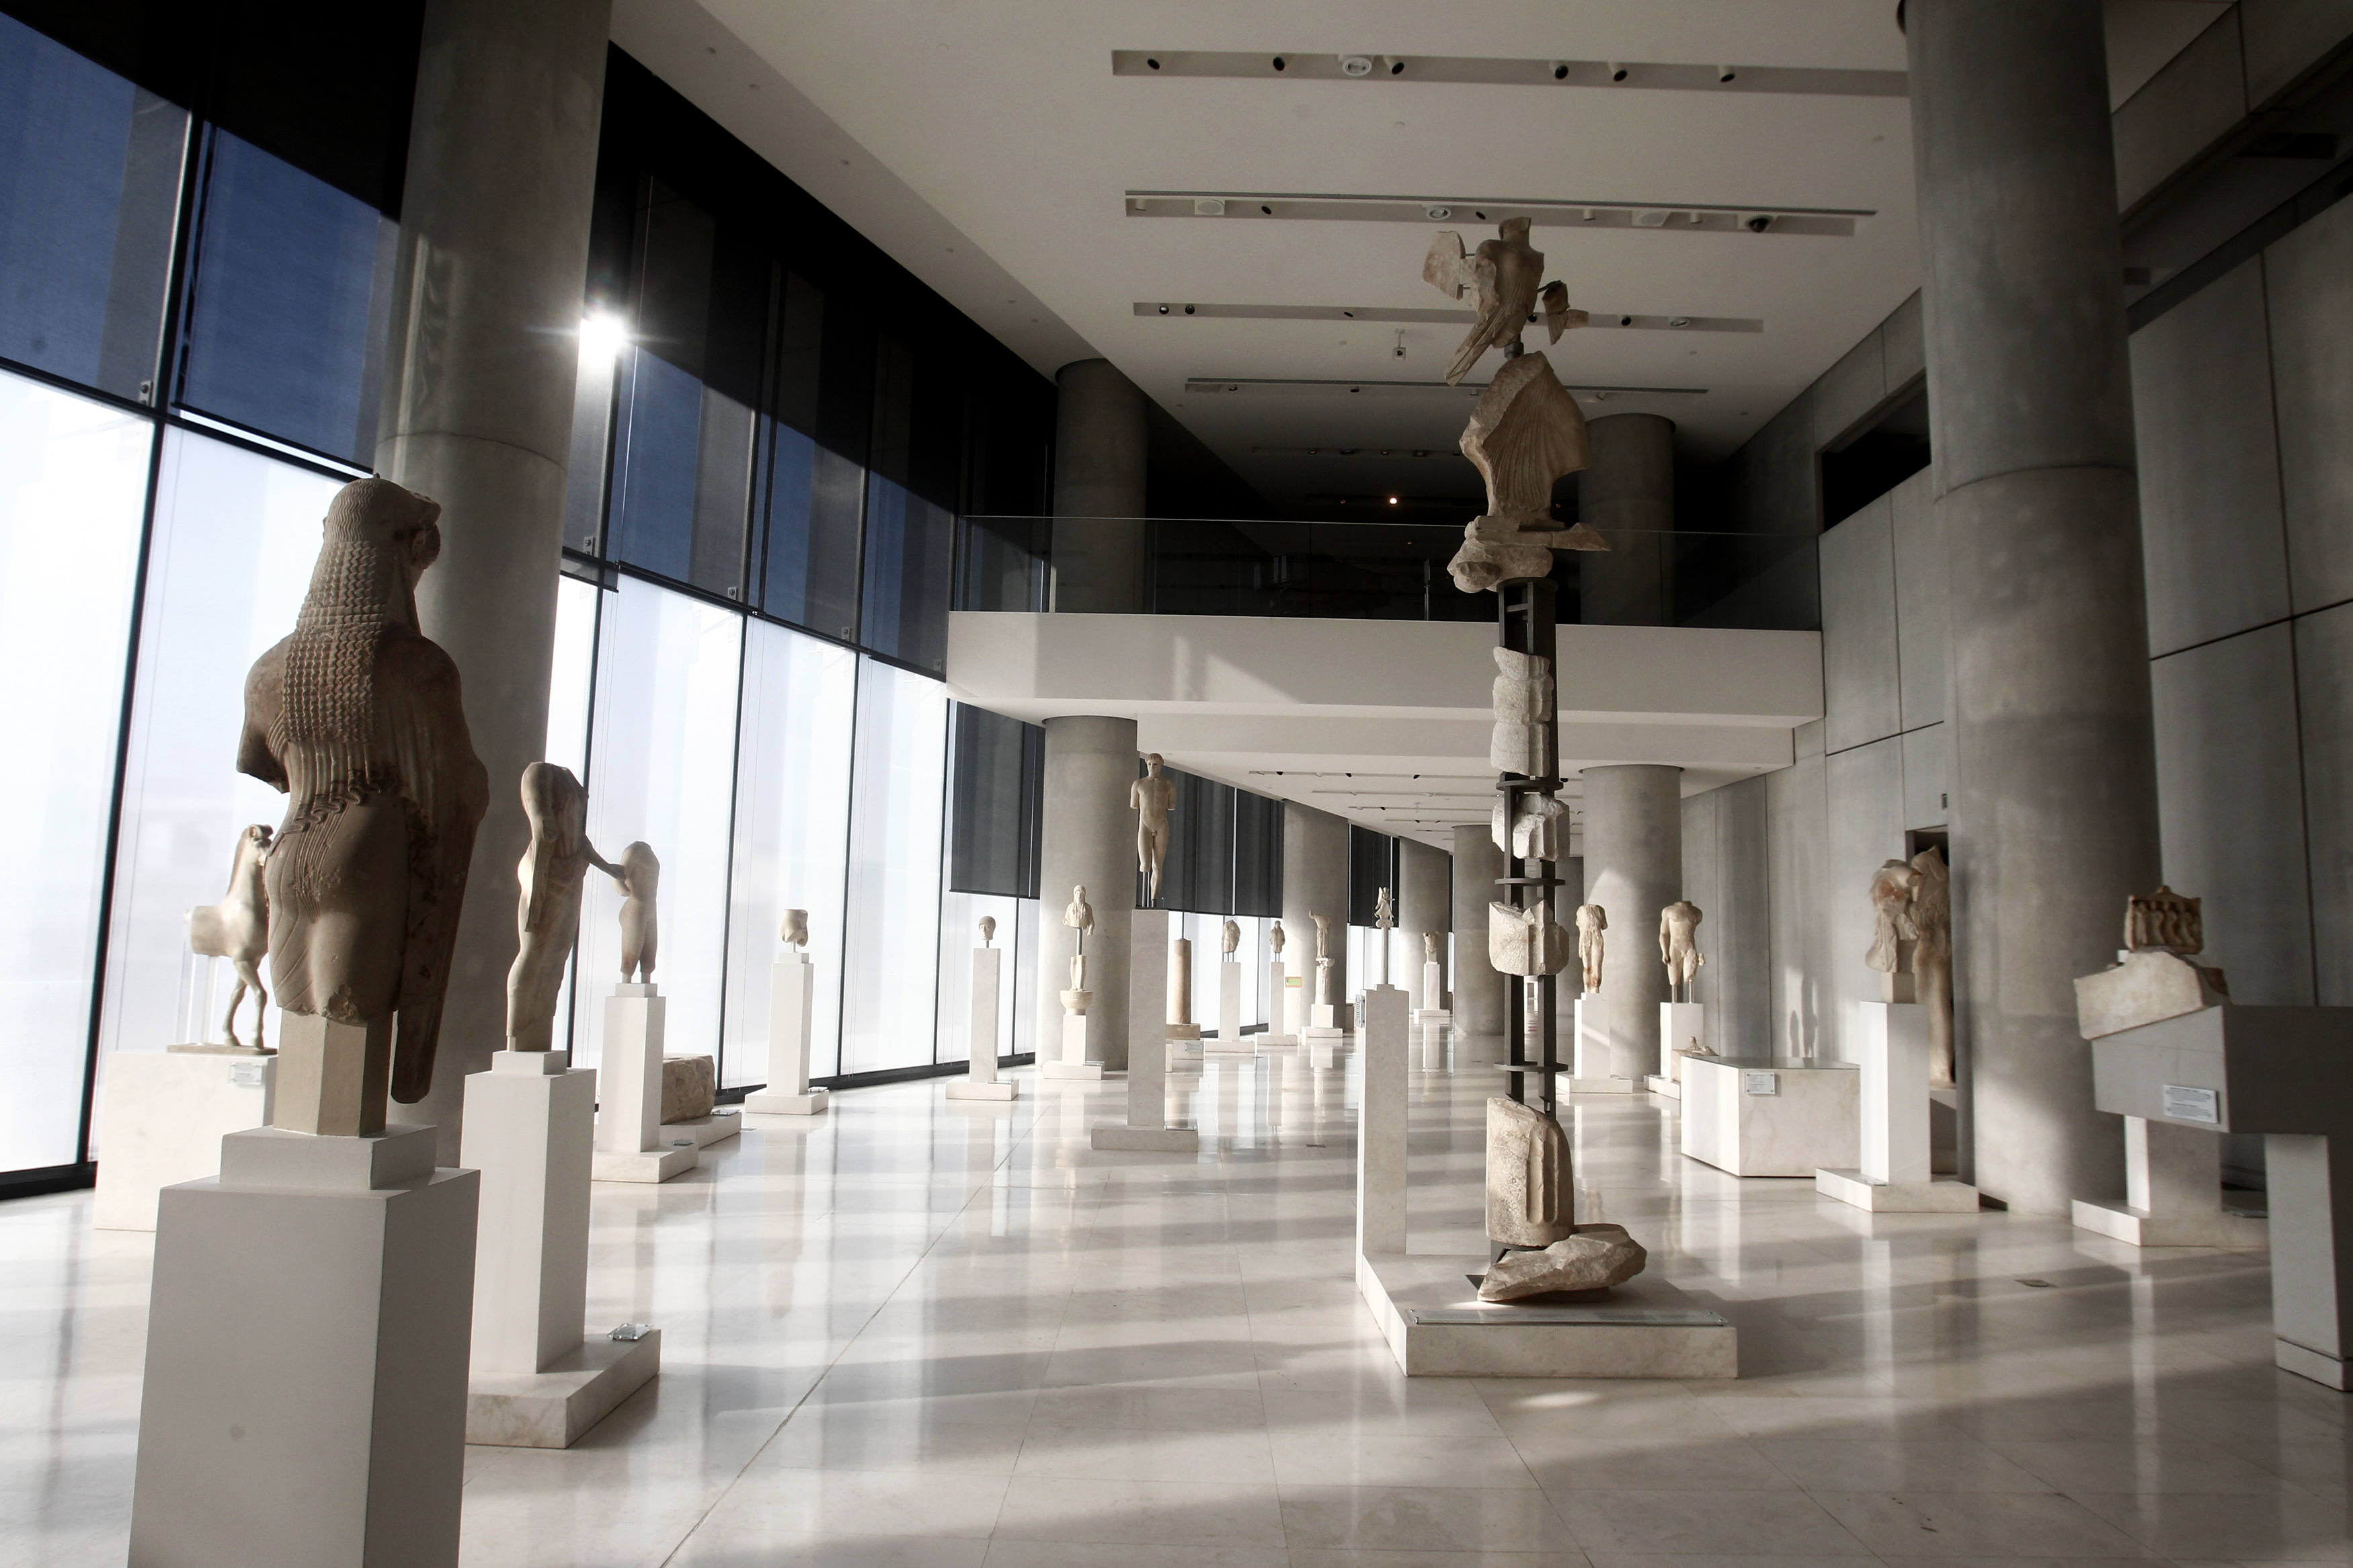 Οι αρχαιολόγοι αντιδρούν σε ρυθμίσεις νομοσχεδίου για τα μουσεία